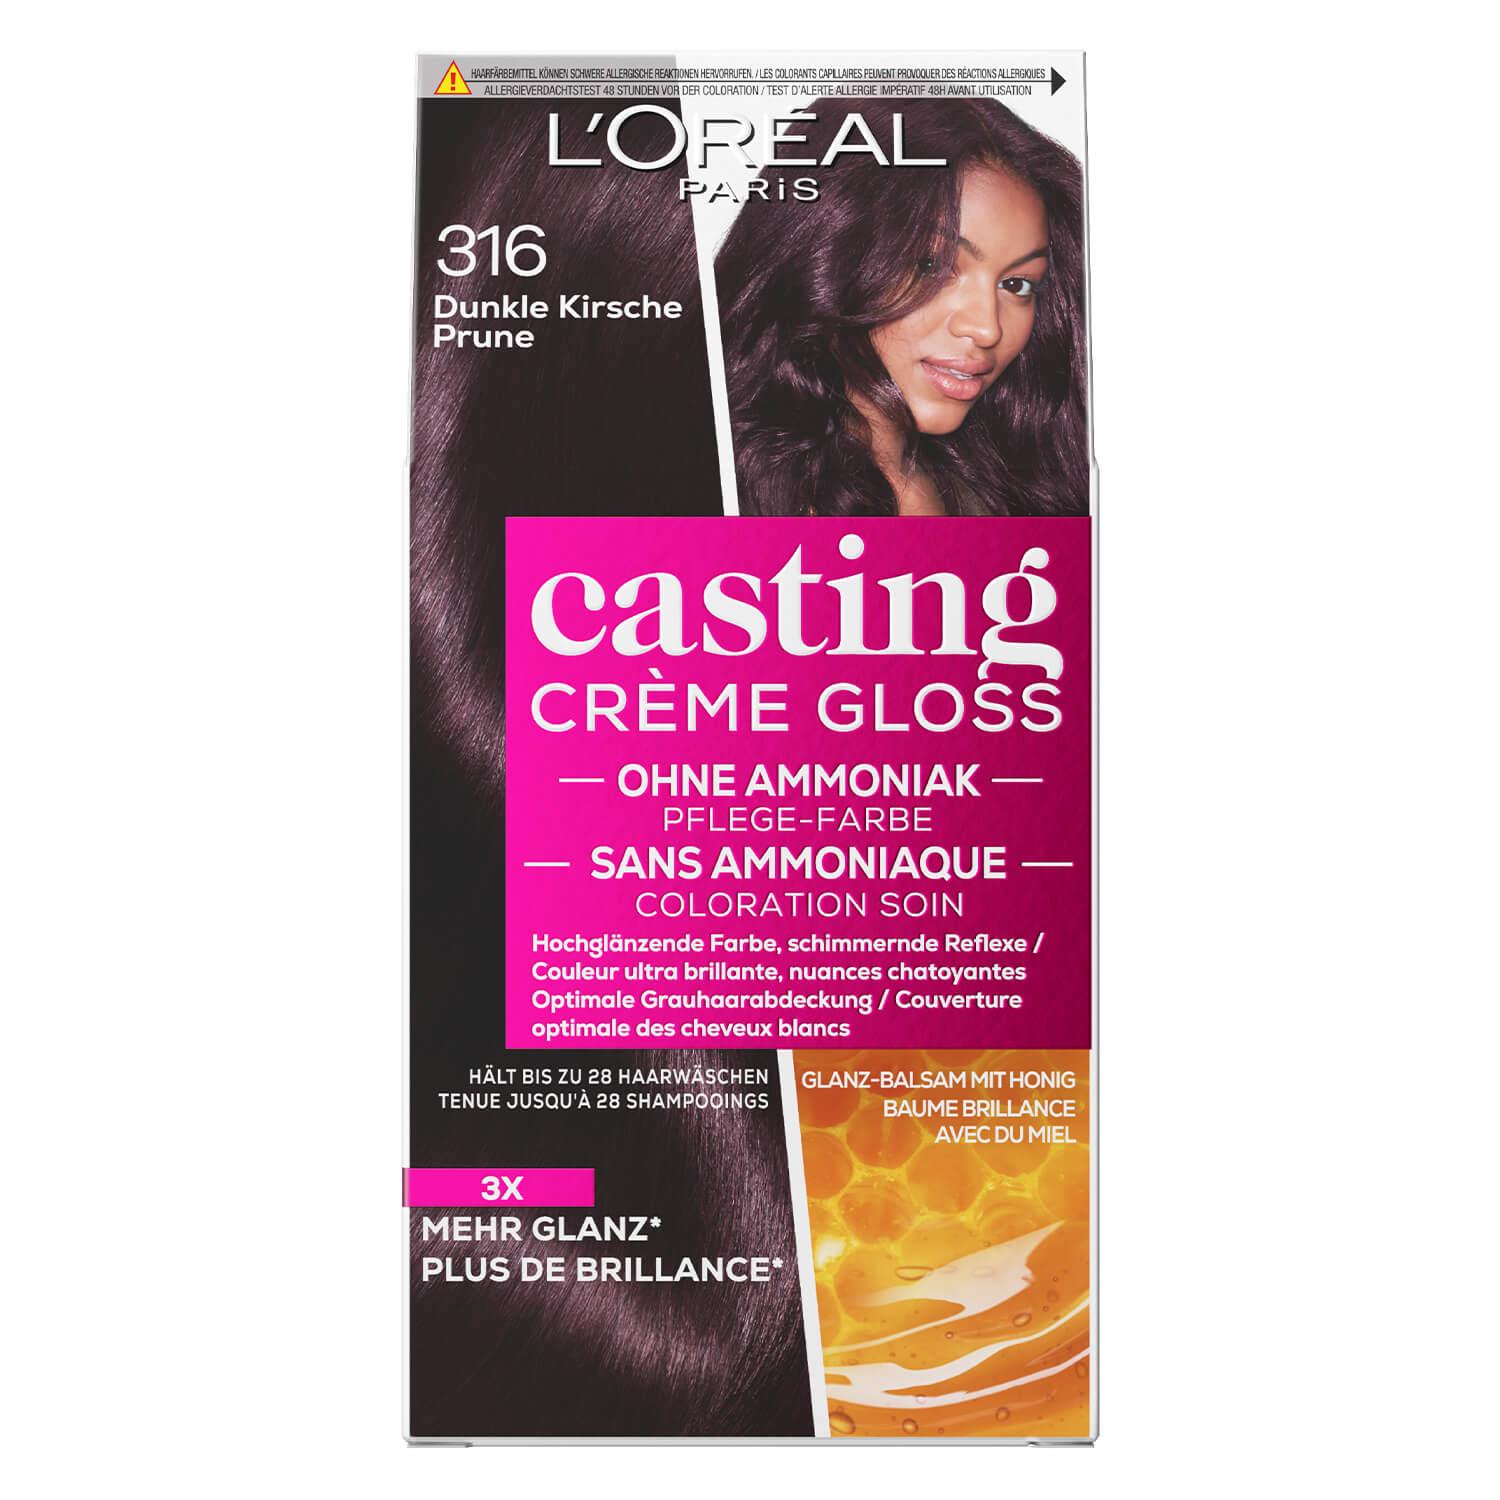 LOréal Casting - Crème Gloss 316 Prune